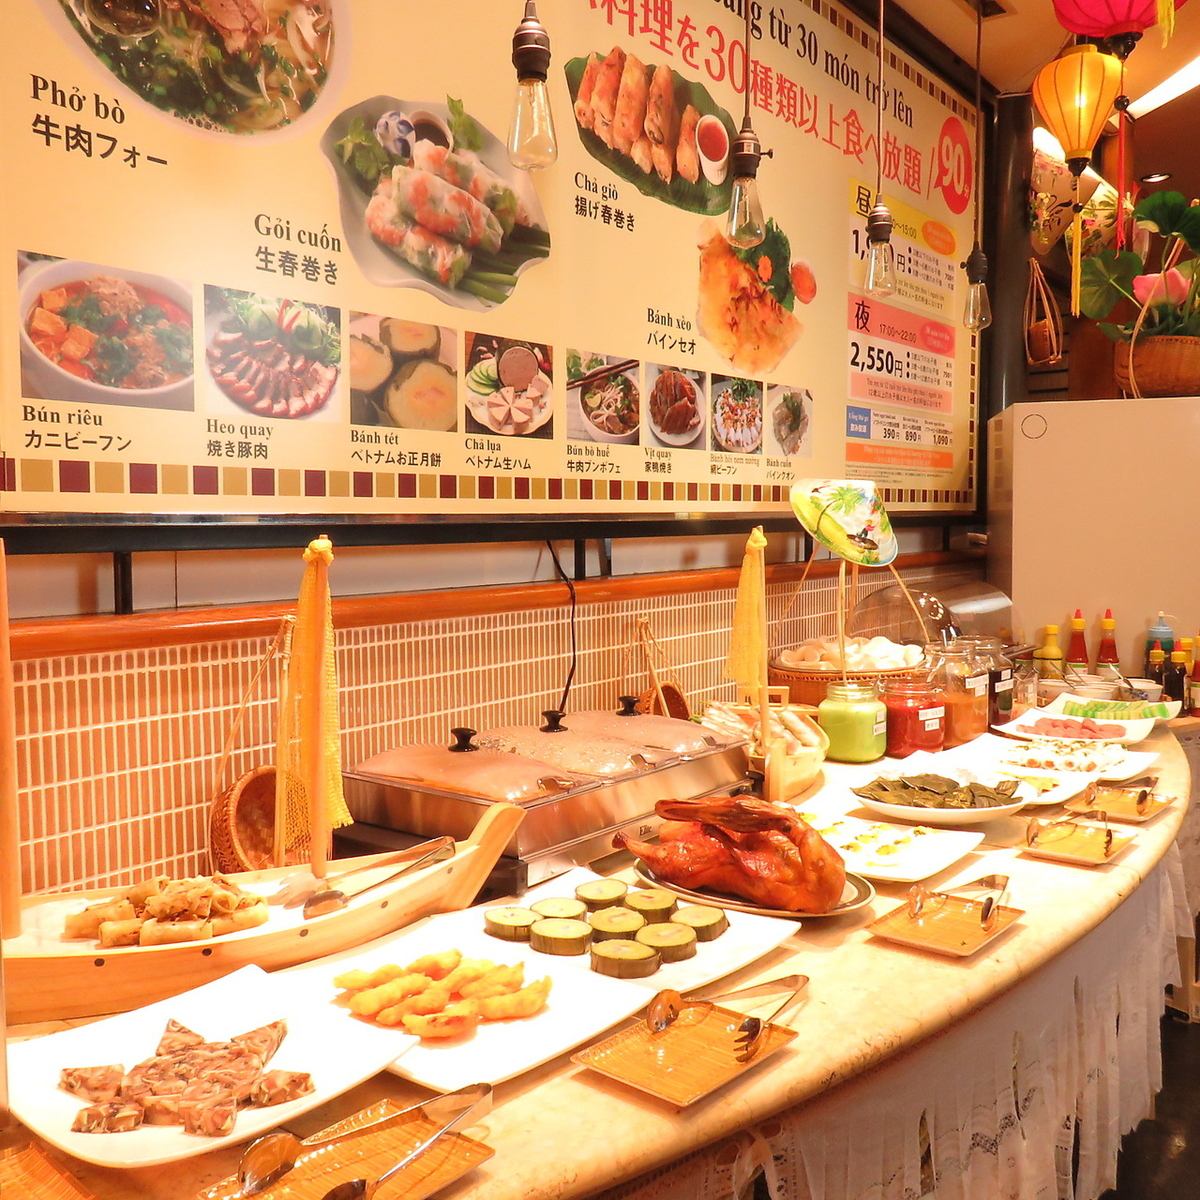 可以品嚐到正宗的越南美食♪晚餐90分鐘2,550日元〜也提供套餐。